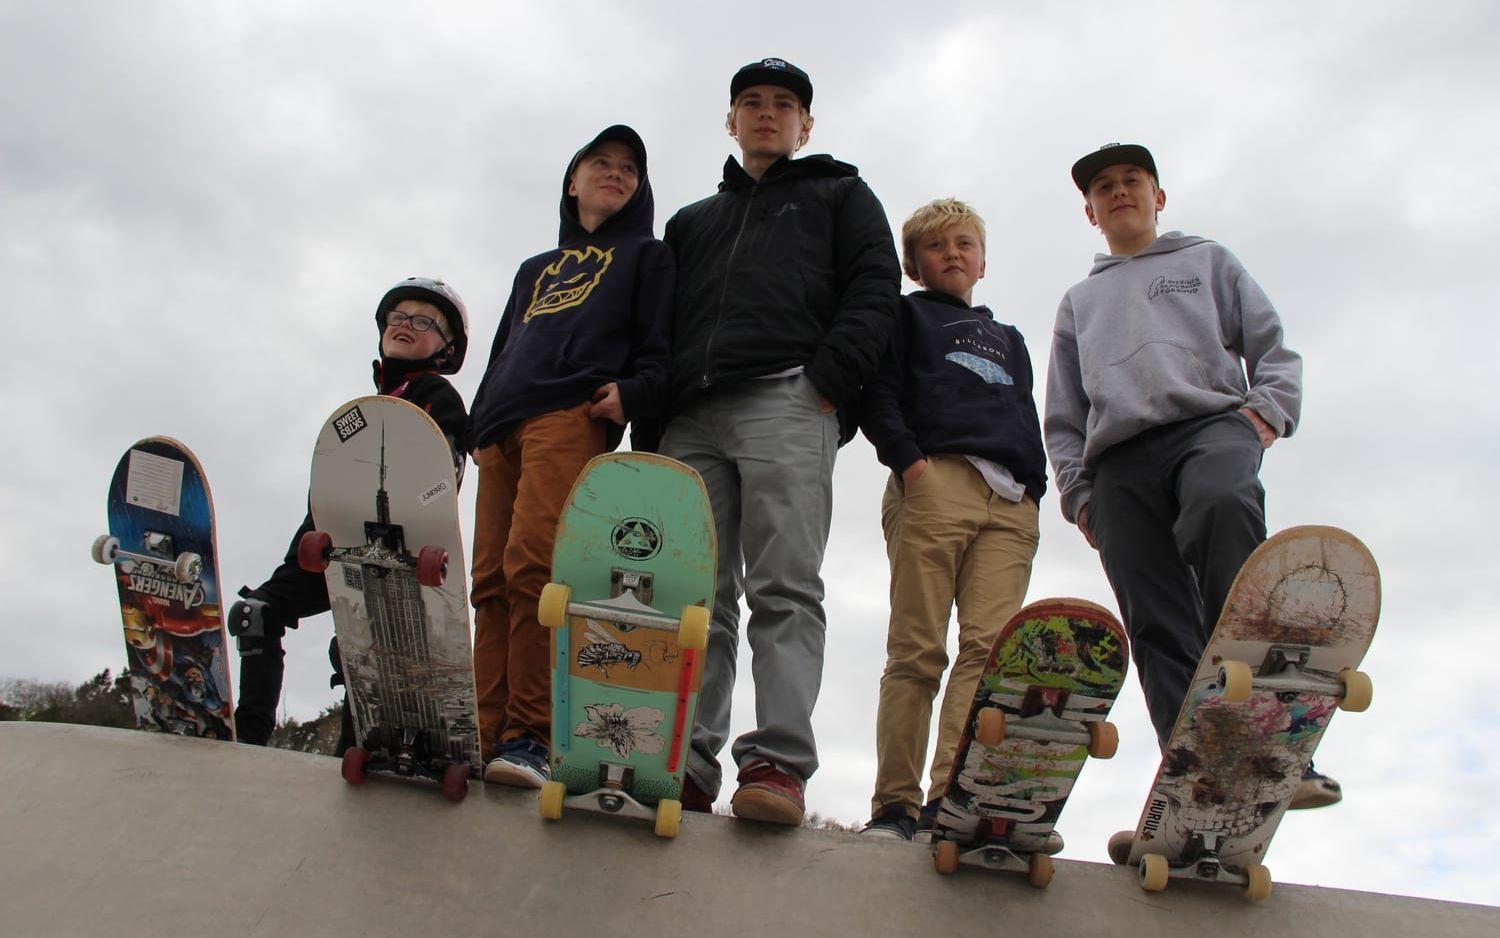 Gillar betongparken. Skateboardåkare från vänster: Olle Sterling, Oliver Granhage, Noel Granhage, Malte Crook och Wilhelm Crook. Bild: Martin Björklund